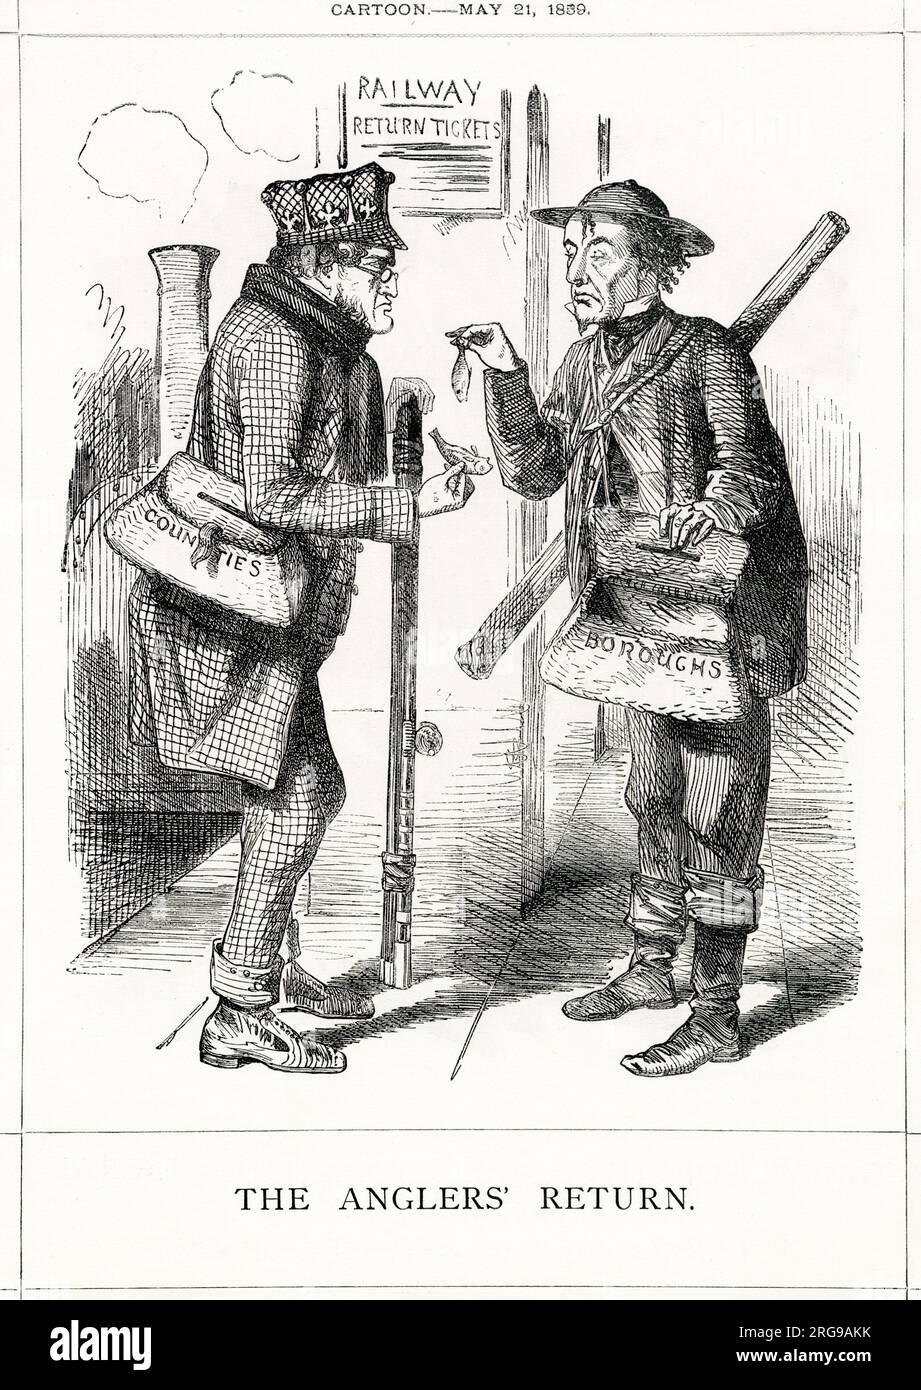 Cartoon, die Rückkehr der Angler – Lord Derby und Benjamin Disraeli, die als Fischer dargestellt wurden, um die schlechte "Rückkehr" der konservativen Partei aus den jüngsten allgemeinen Wahlen zu untersuchen – die liberale Partei unter Lord Palmerston hatte mehr Sitze gewonnen und eine Mehrheit gehalten. Stockfoto